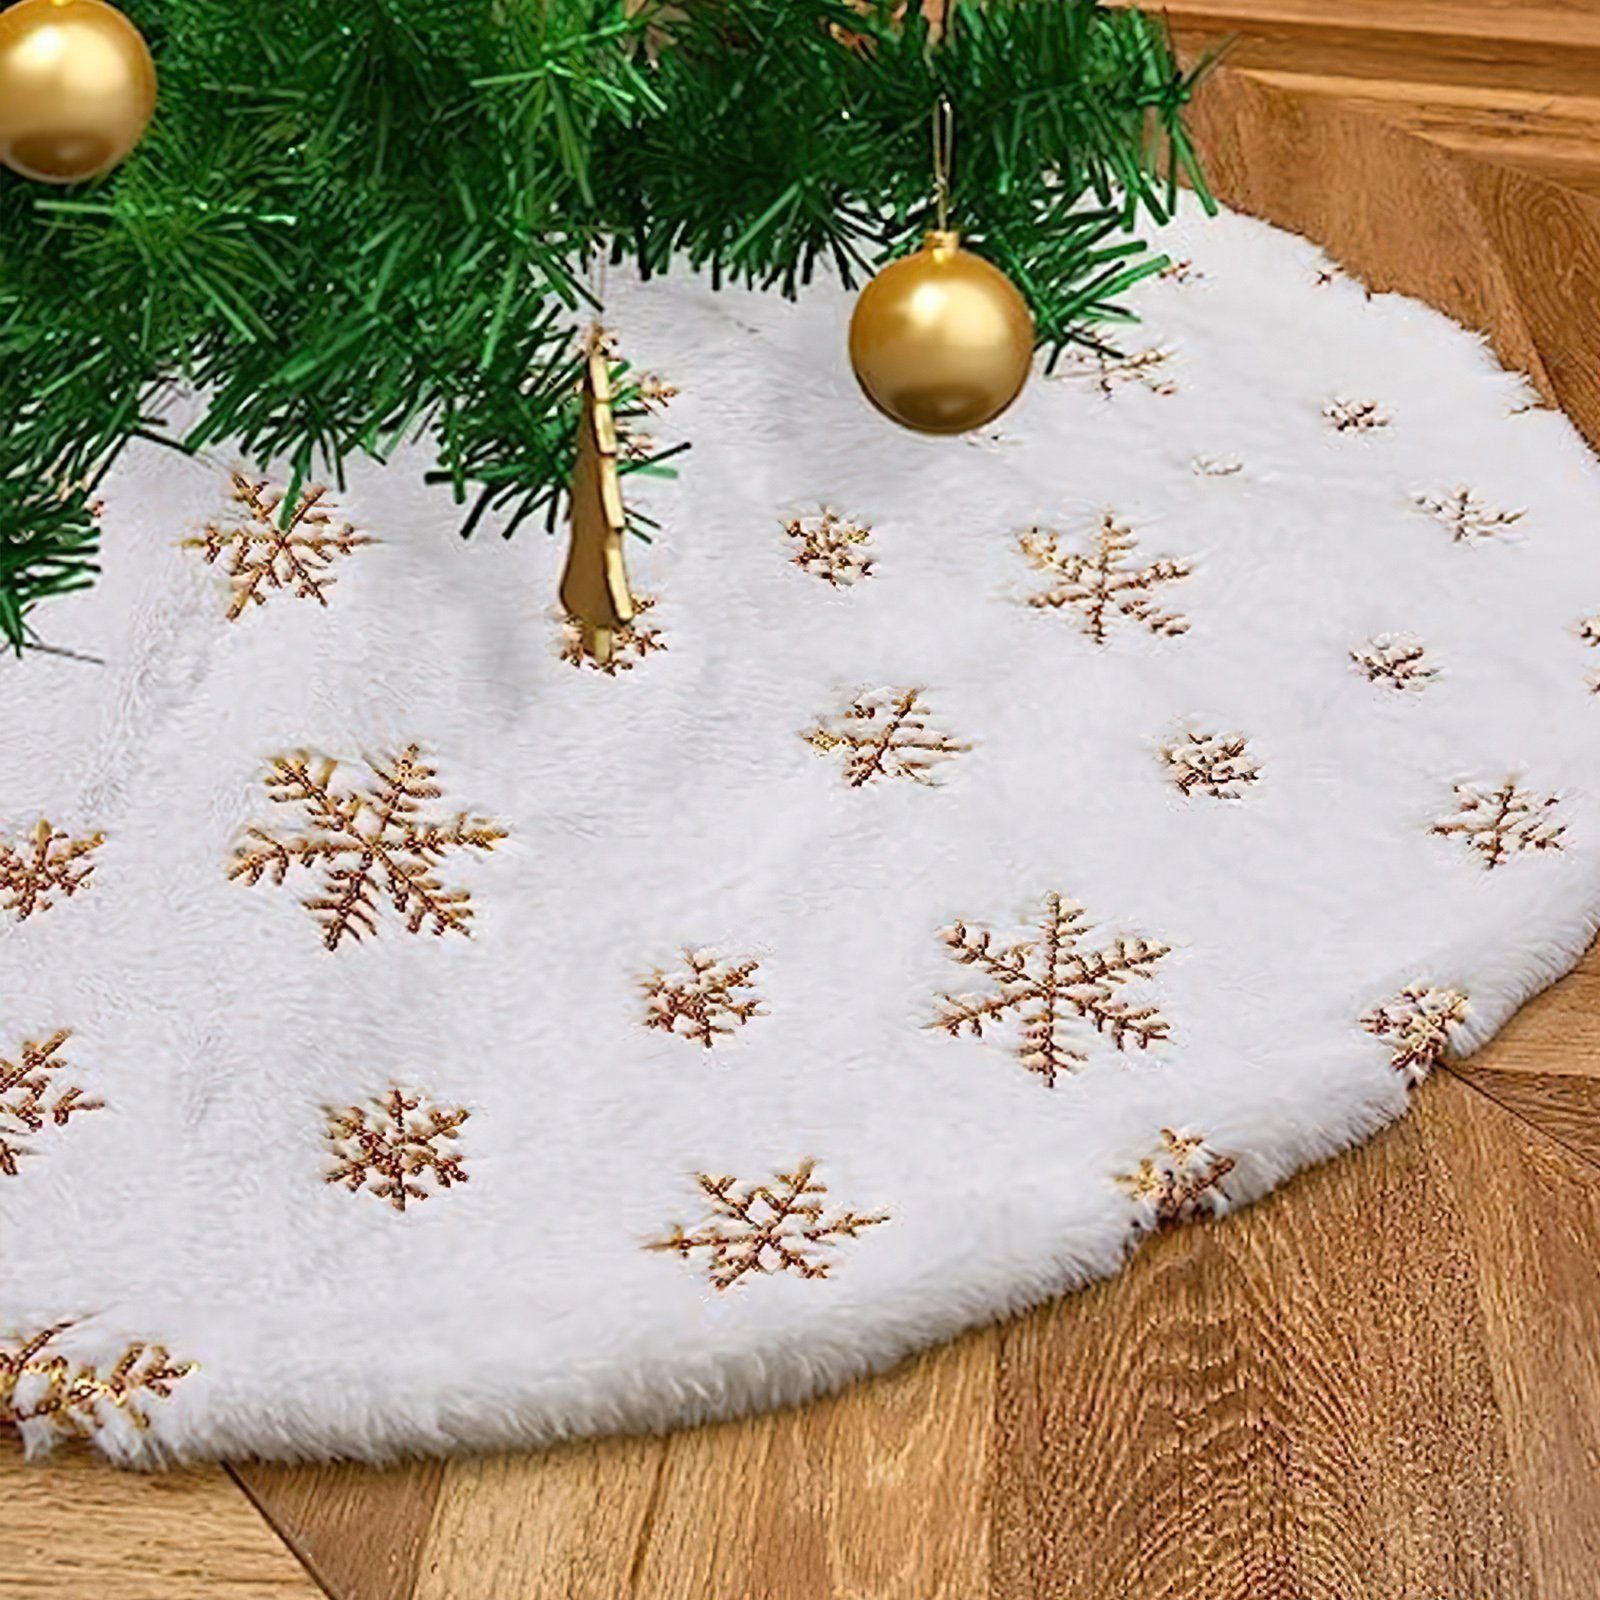 Neujahr Schneeflocken, Dekoration Teppich, Baumteppich Weihnachtsbaum Weihnachtsbaumdecke Goldene für Weihnachtsbaum Rock Vbrisi, Party Weihnachten